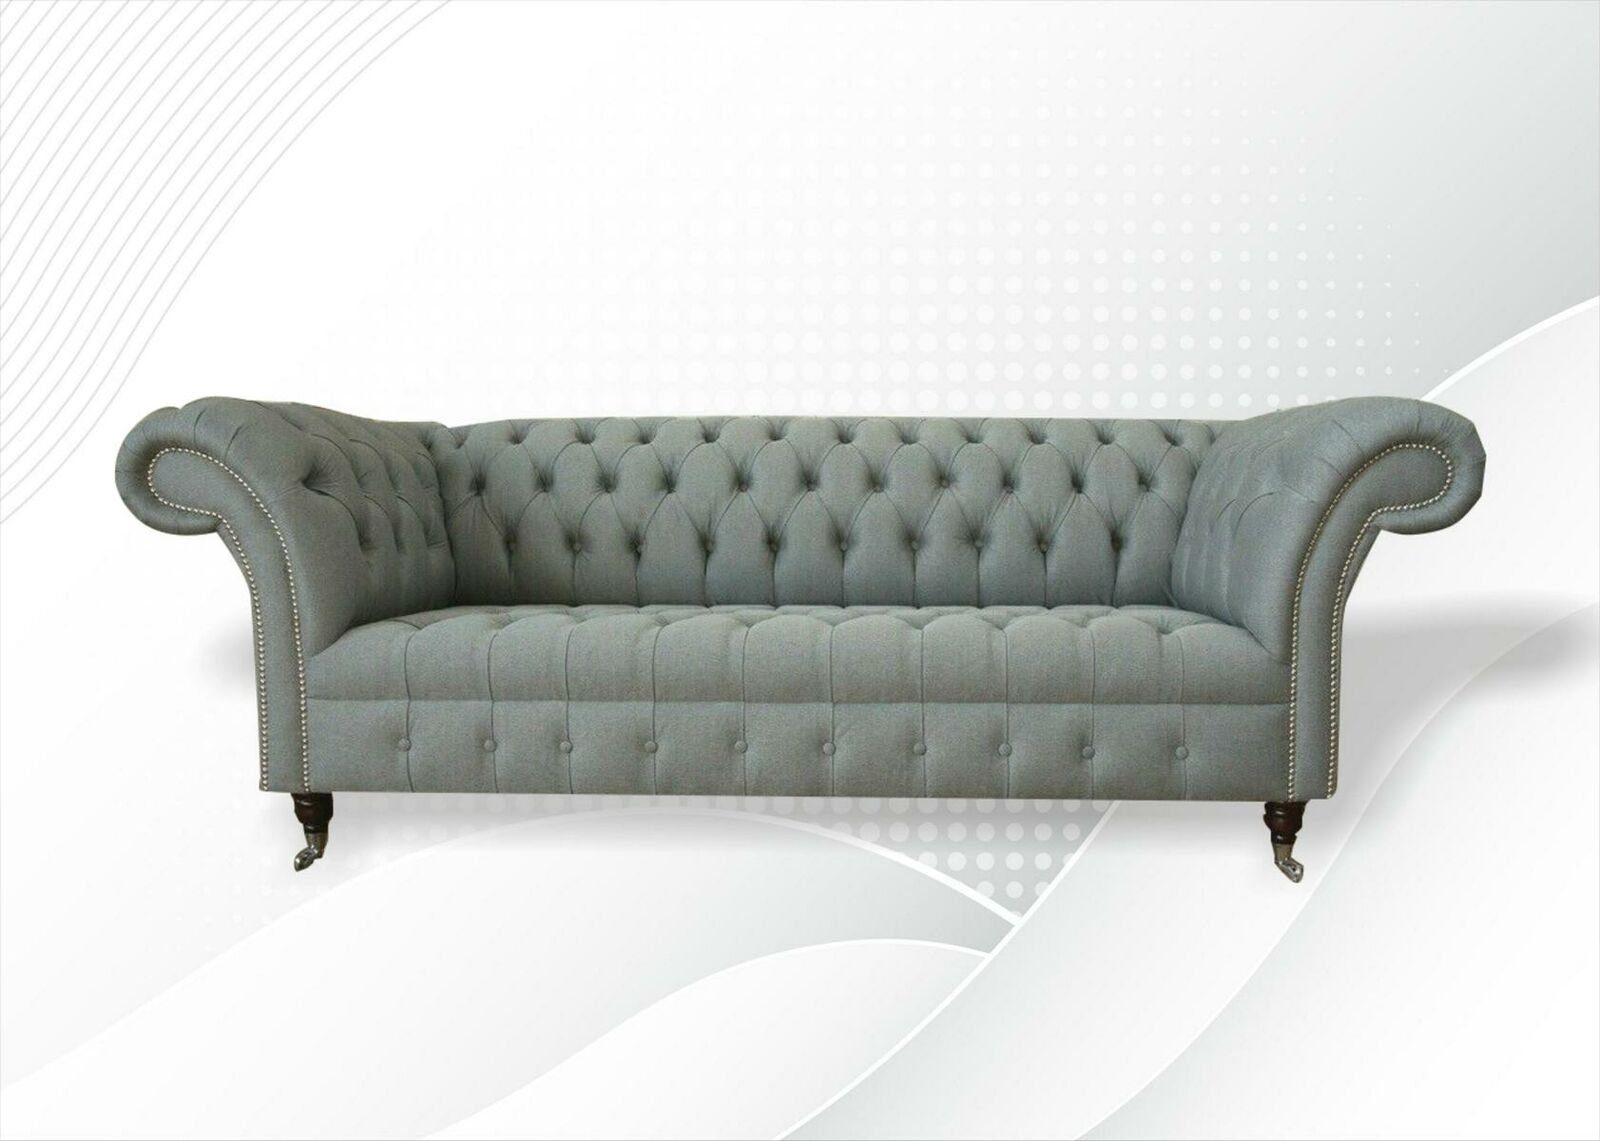 JVmoebel Sofa Luxus grauer Chesterfield Dreisitzer Neu Polstercouch, Made in Europe